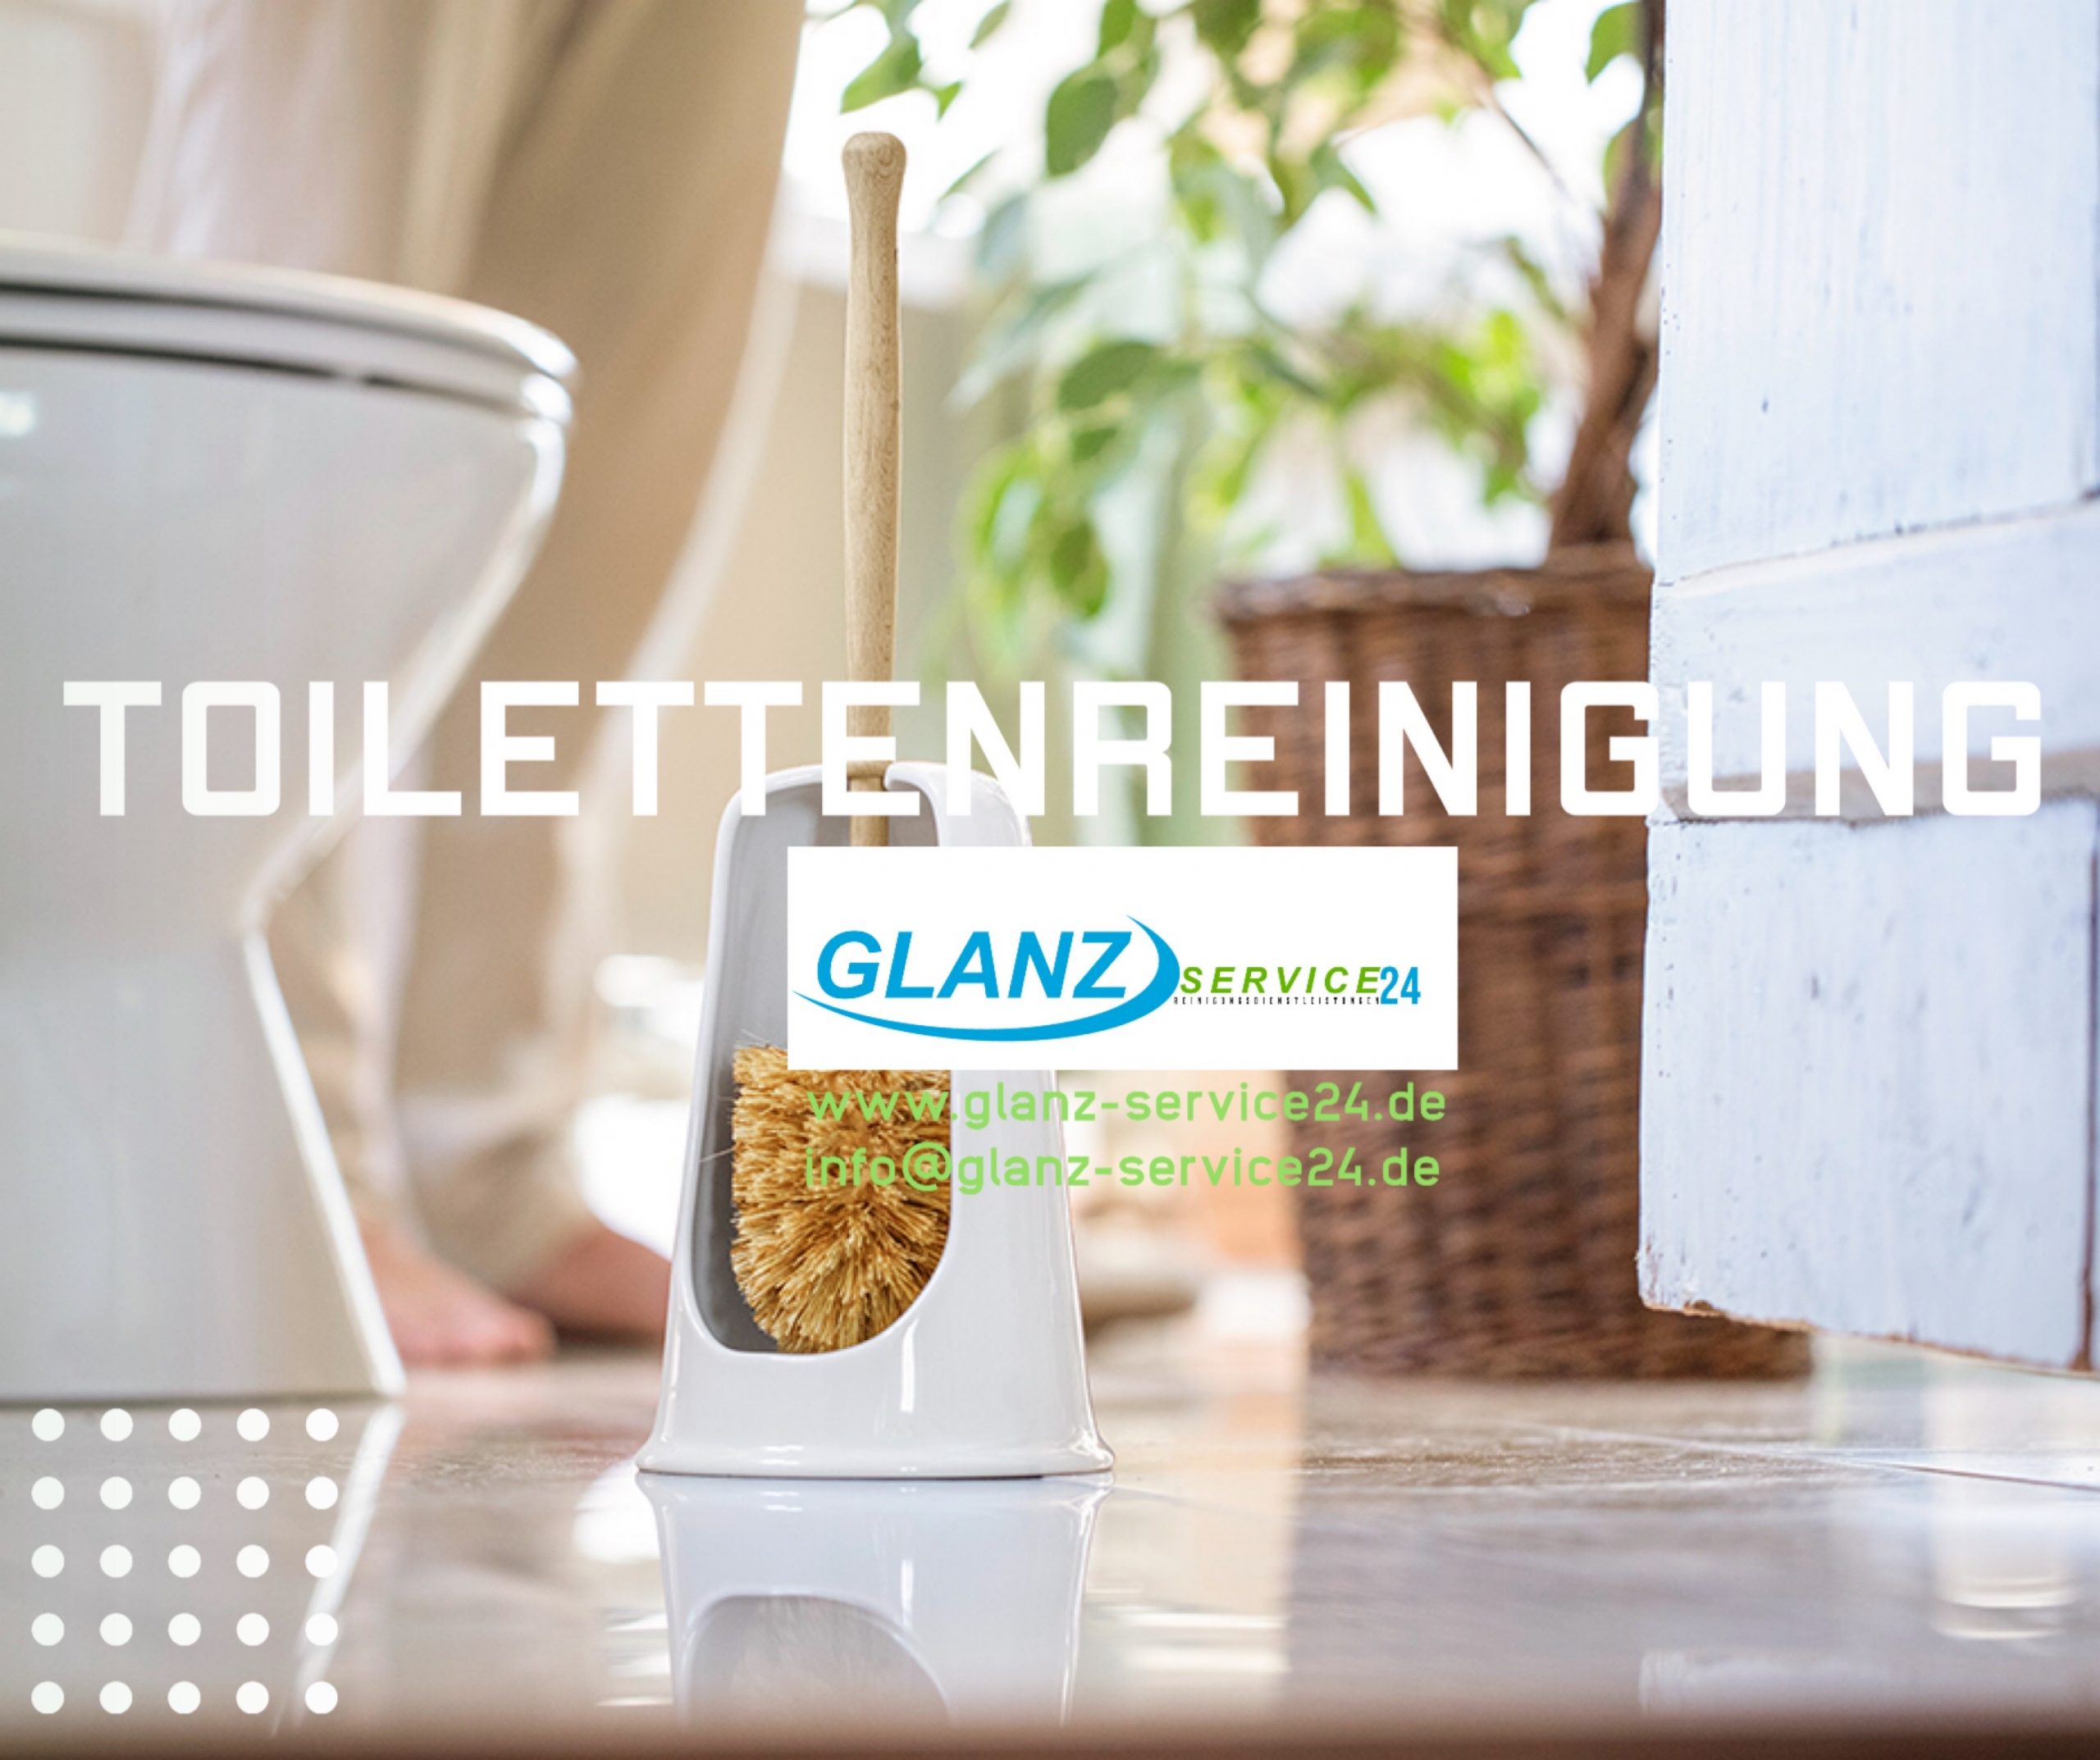 Toilettenreinigung Regensburg